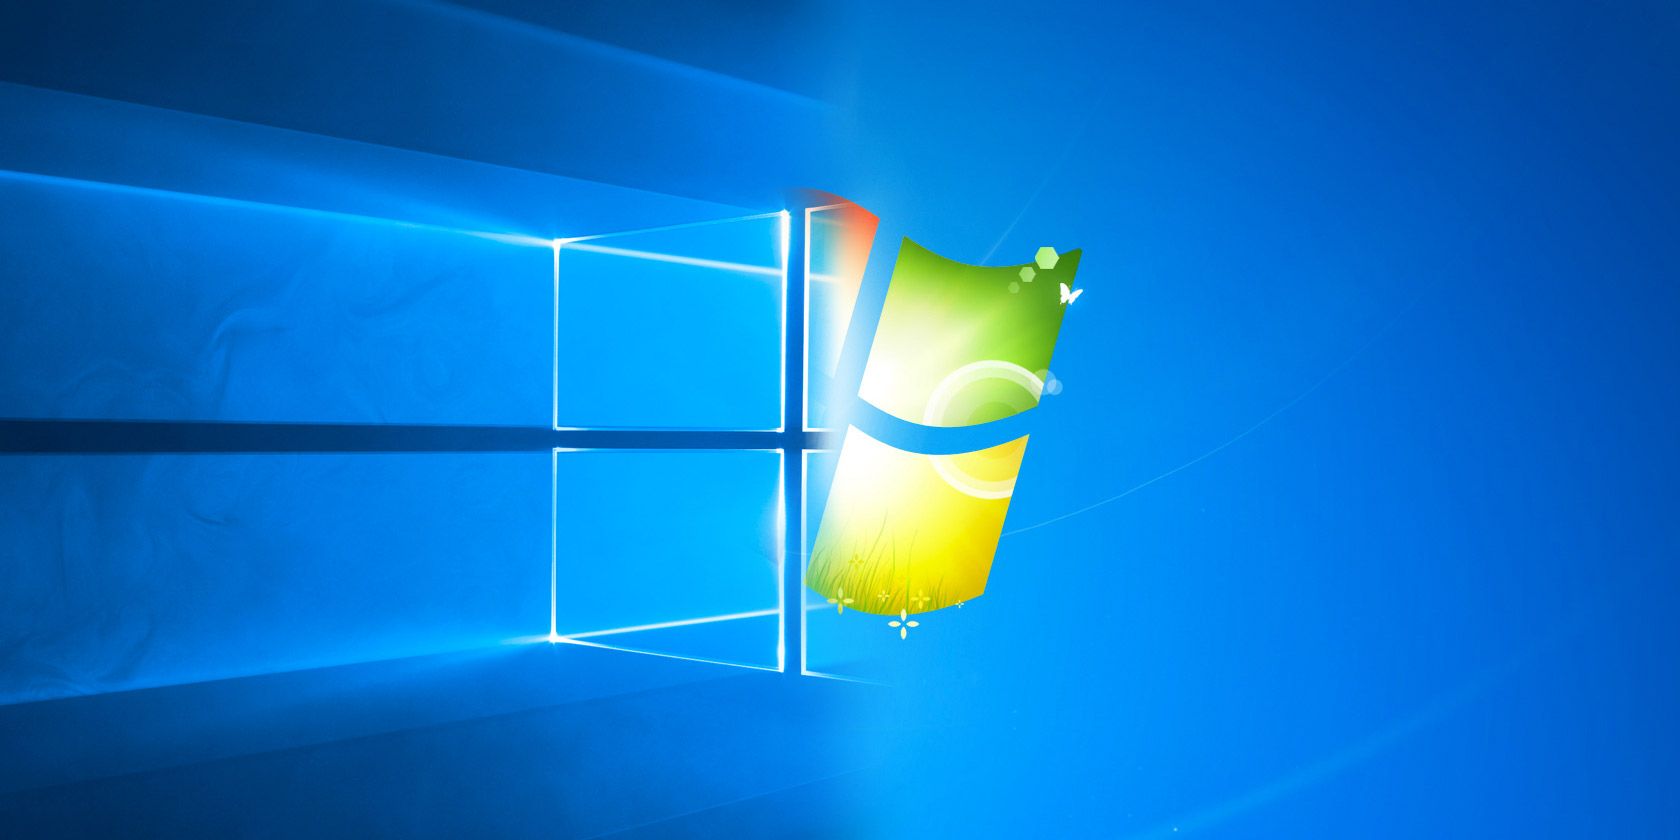 Bạn yêu thích giao diện của Windows 7 hơn? Hãy làm cho Windows 10 giống Windows 7 hơn bằng cách tùy chỉnh và cài đặt các thiết lập phù hợp với phong cách của bạn. Tận hưởng trải nghiệm dễ chịu và thuận tiện nhất trên Windows 10.